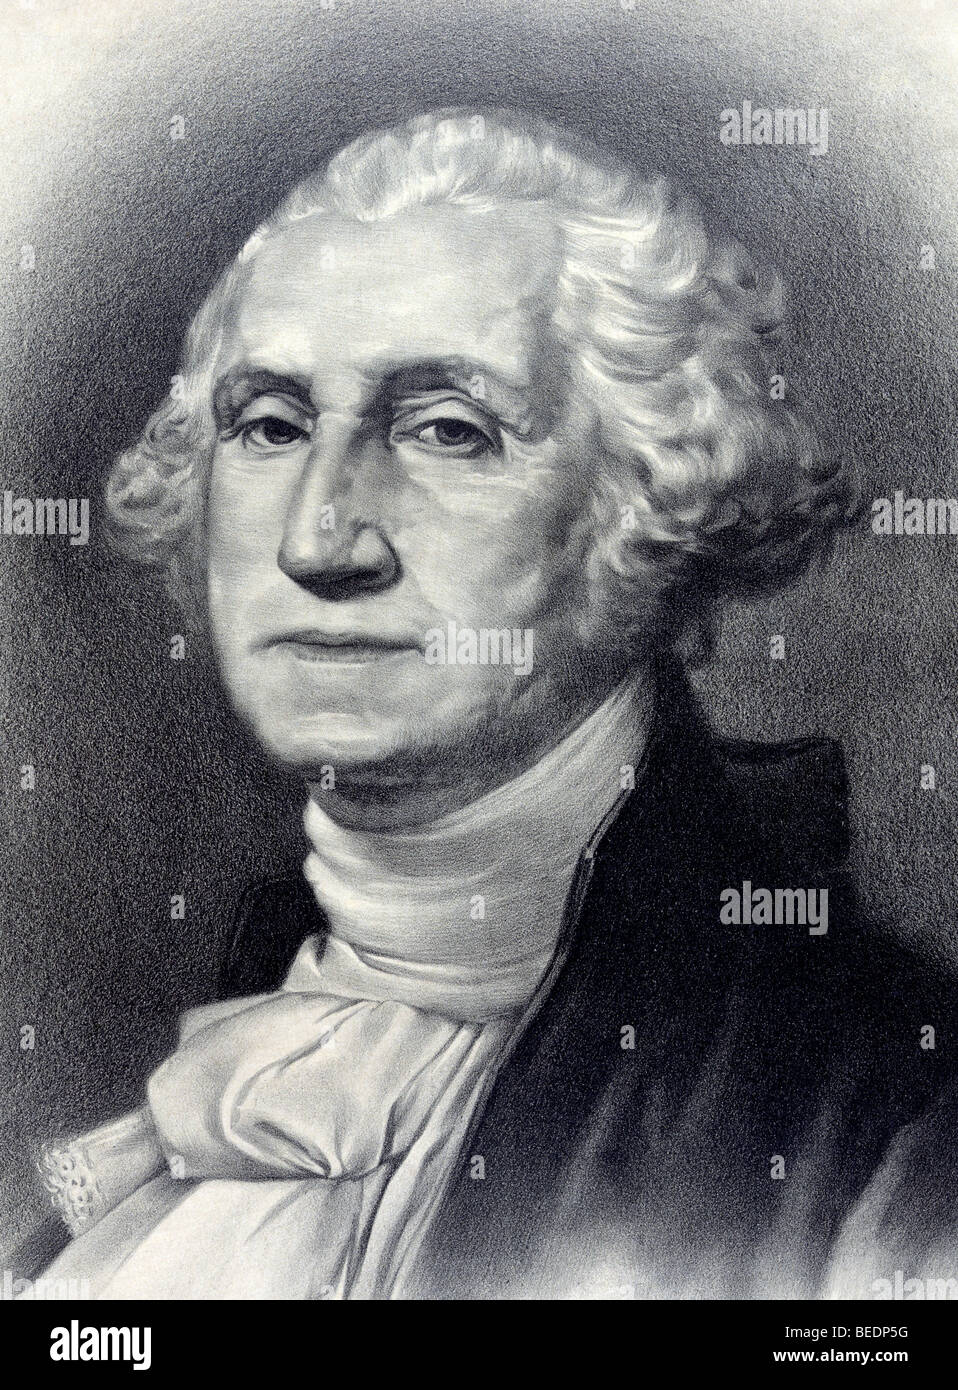 Porträt drucken ca. 1896 von George Washington, der erste US-Präsident mit dem Titel "Der Vater seines Landes". Stockfoto